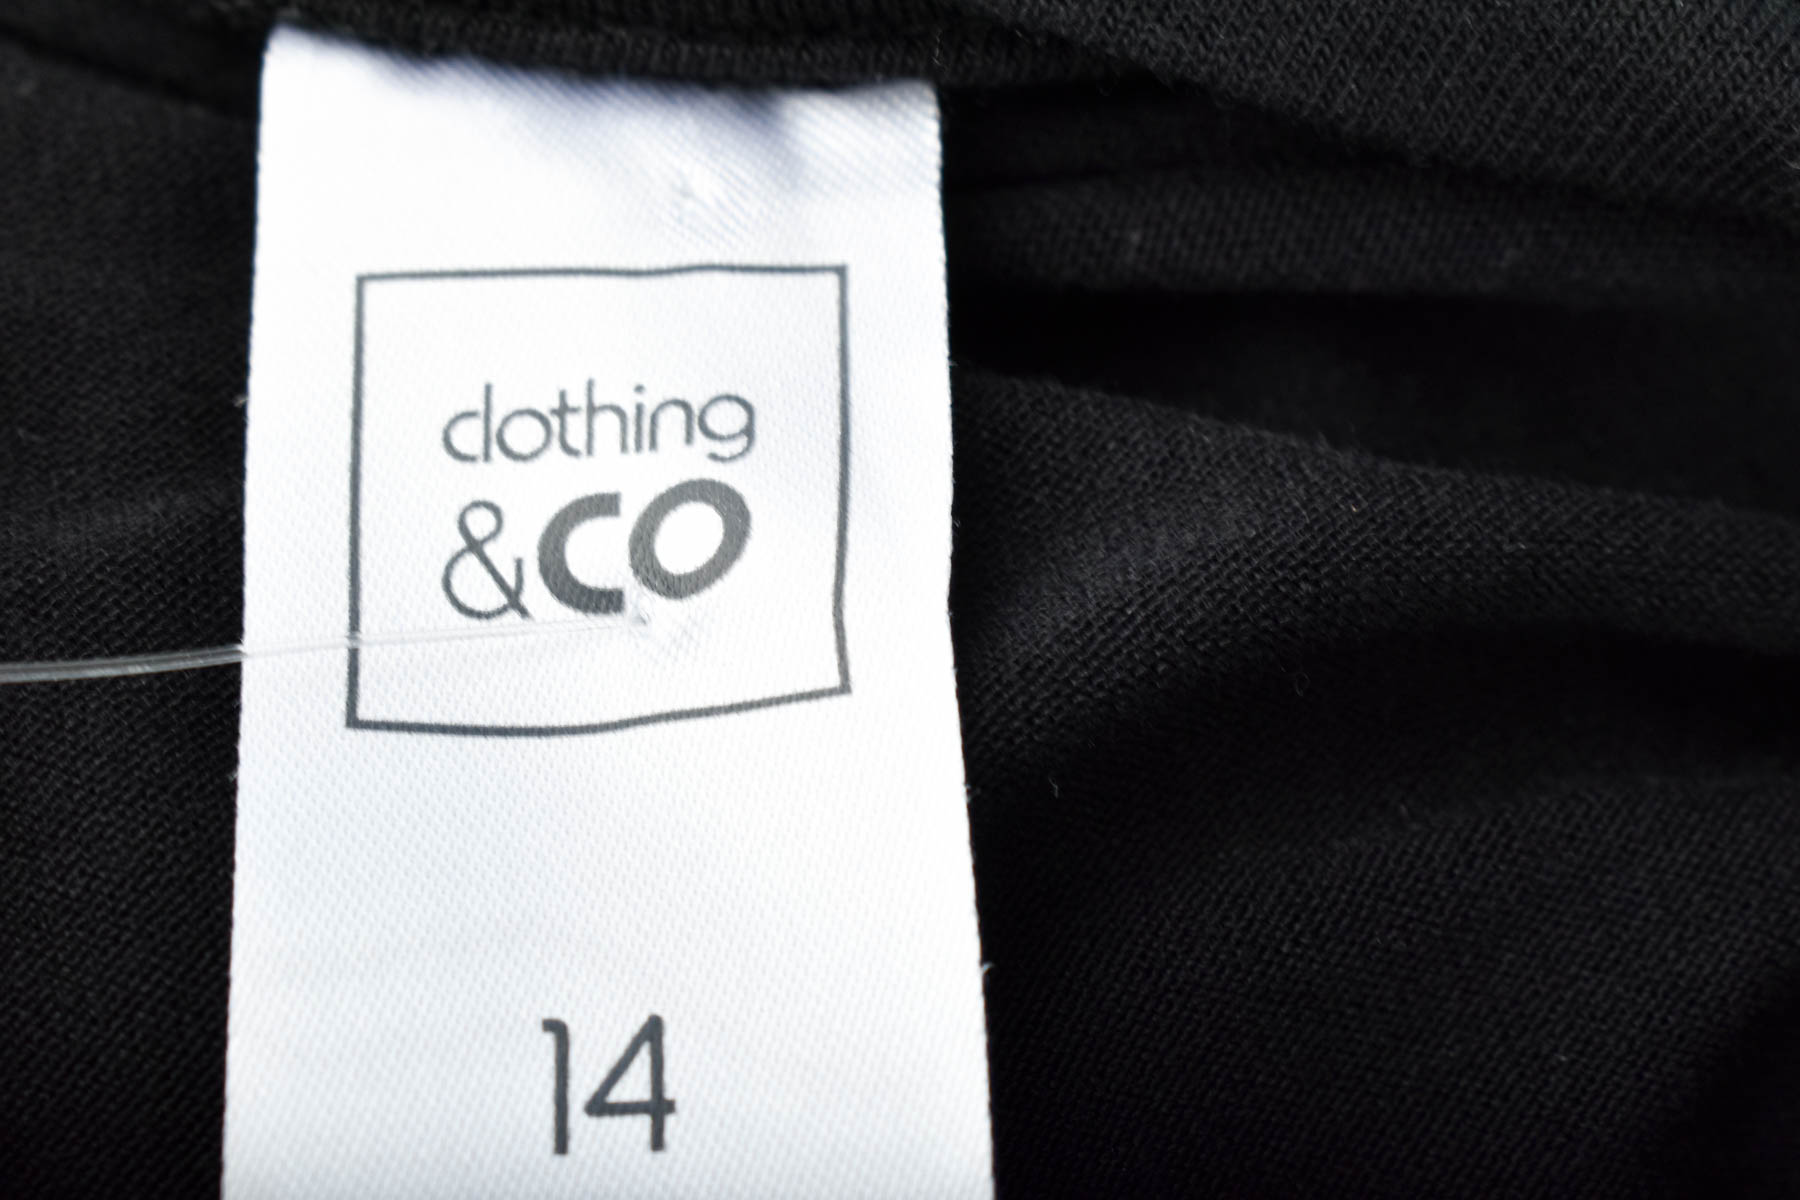 Γυναικεία μπλούζα - Clothing & CO - 2